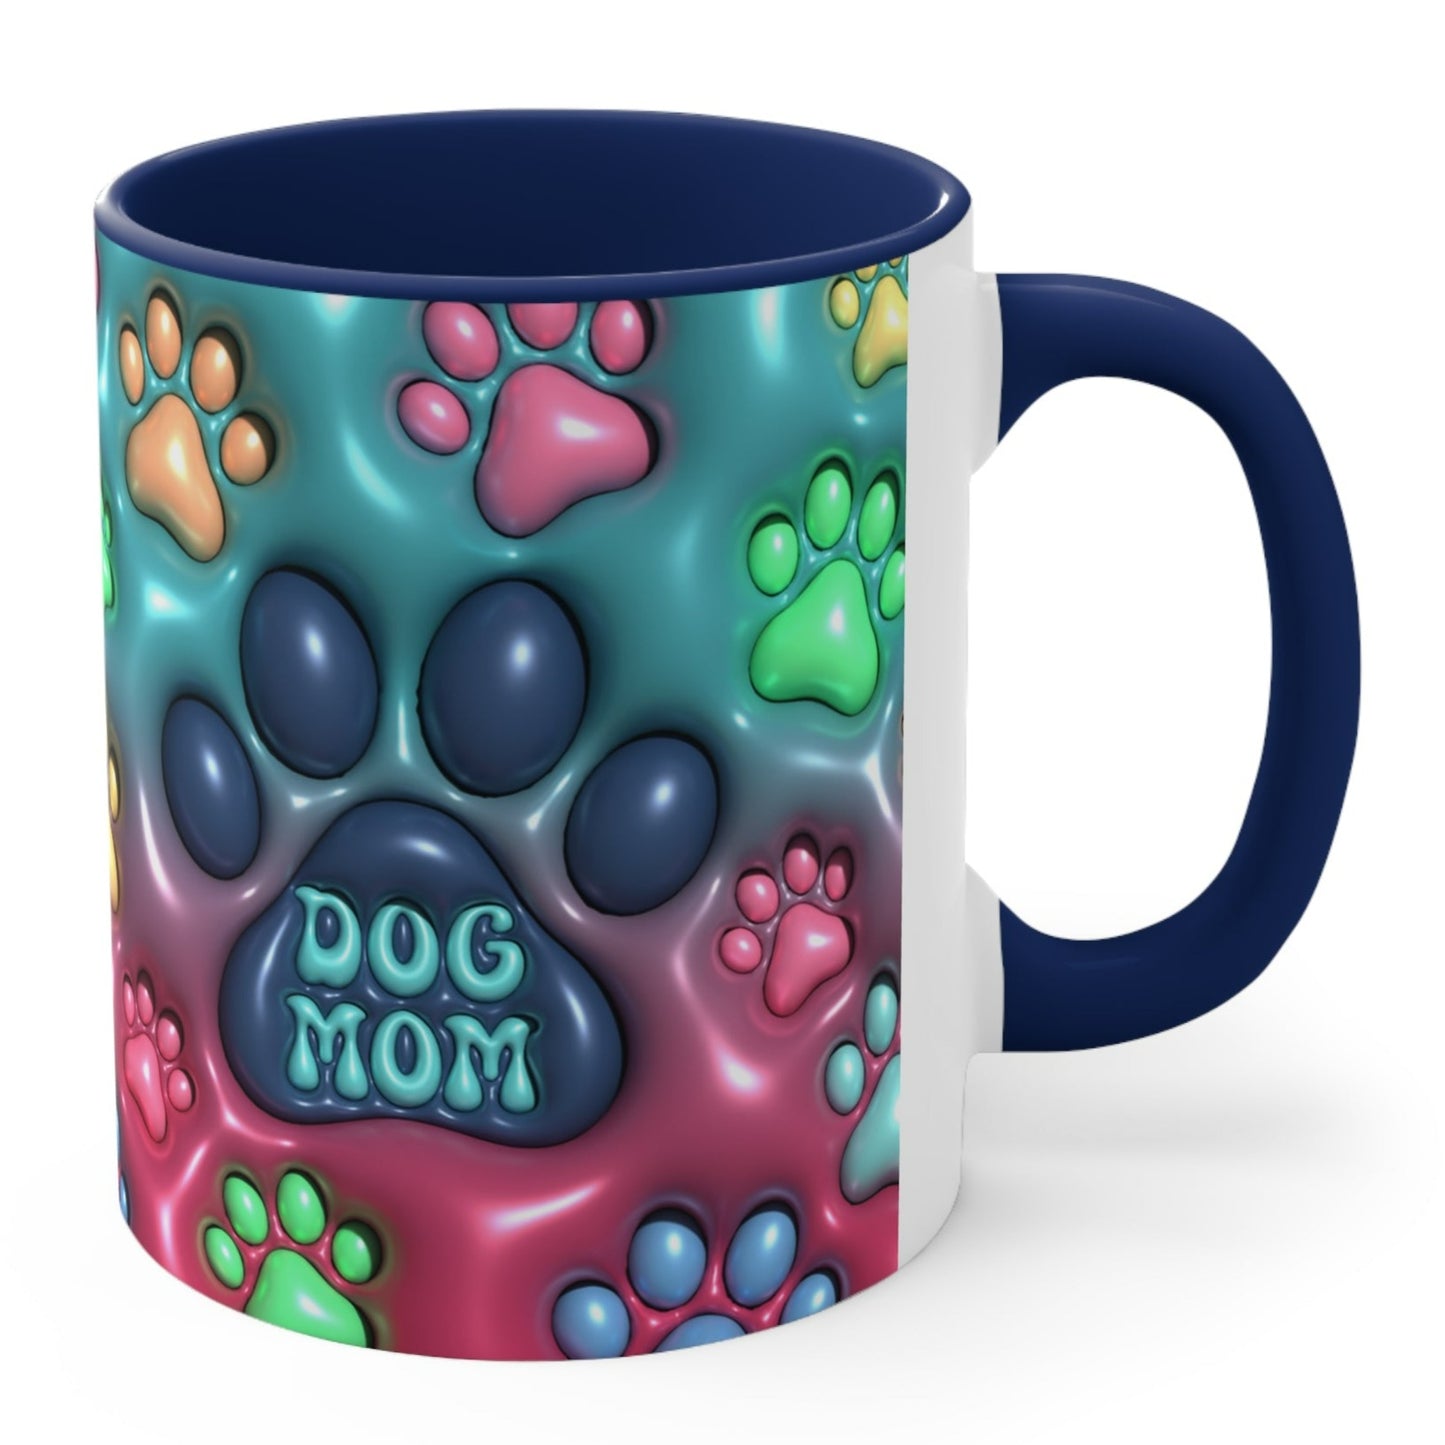 DOG MOM MUG - MUSGCITY - Free Shipping